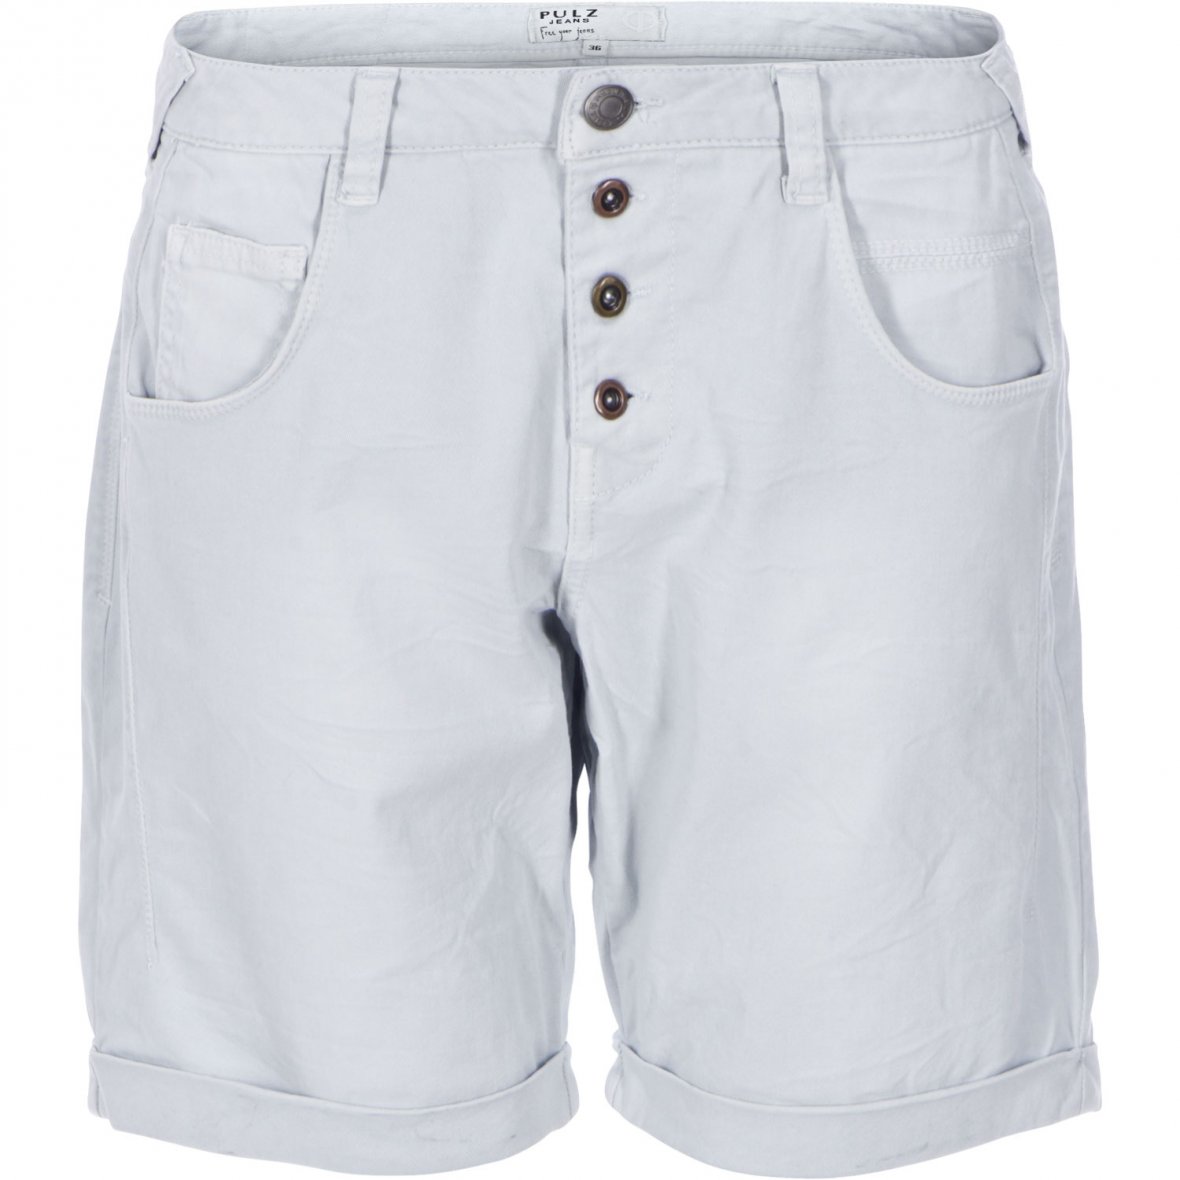 Køb online Melina shorts fra Pulz Jeans